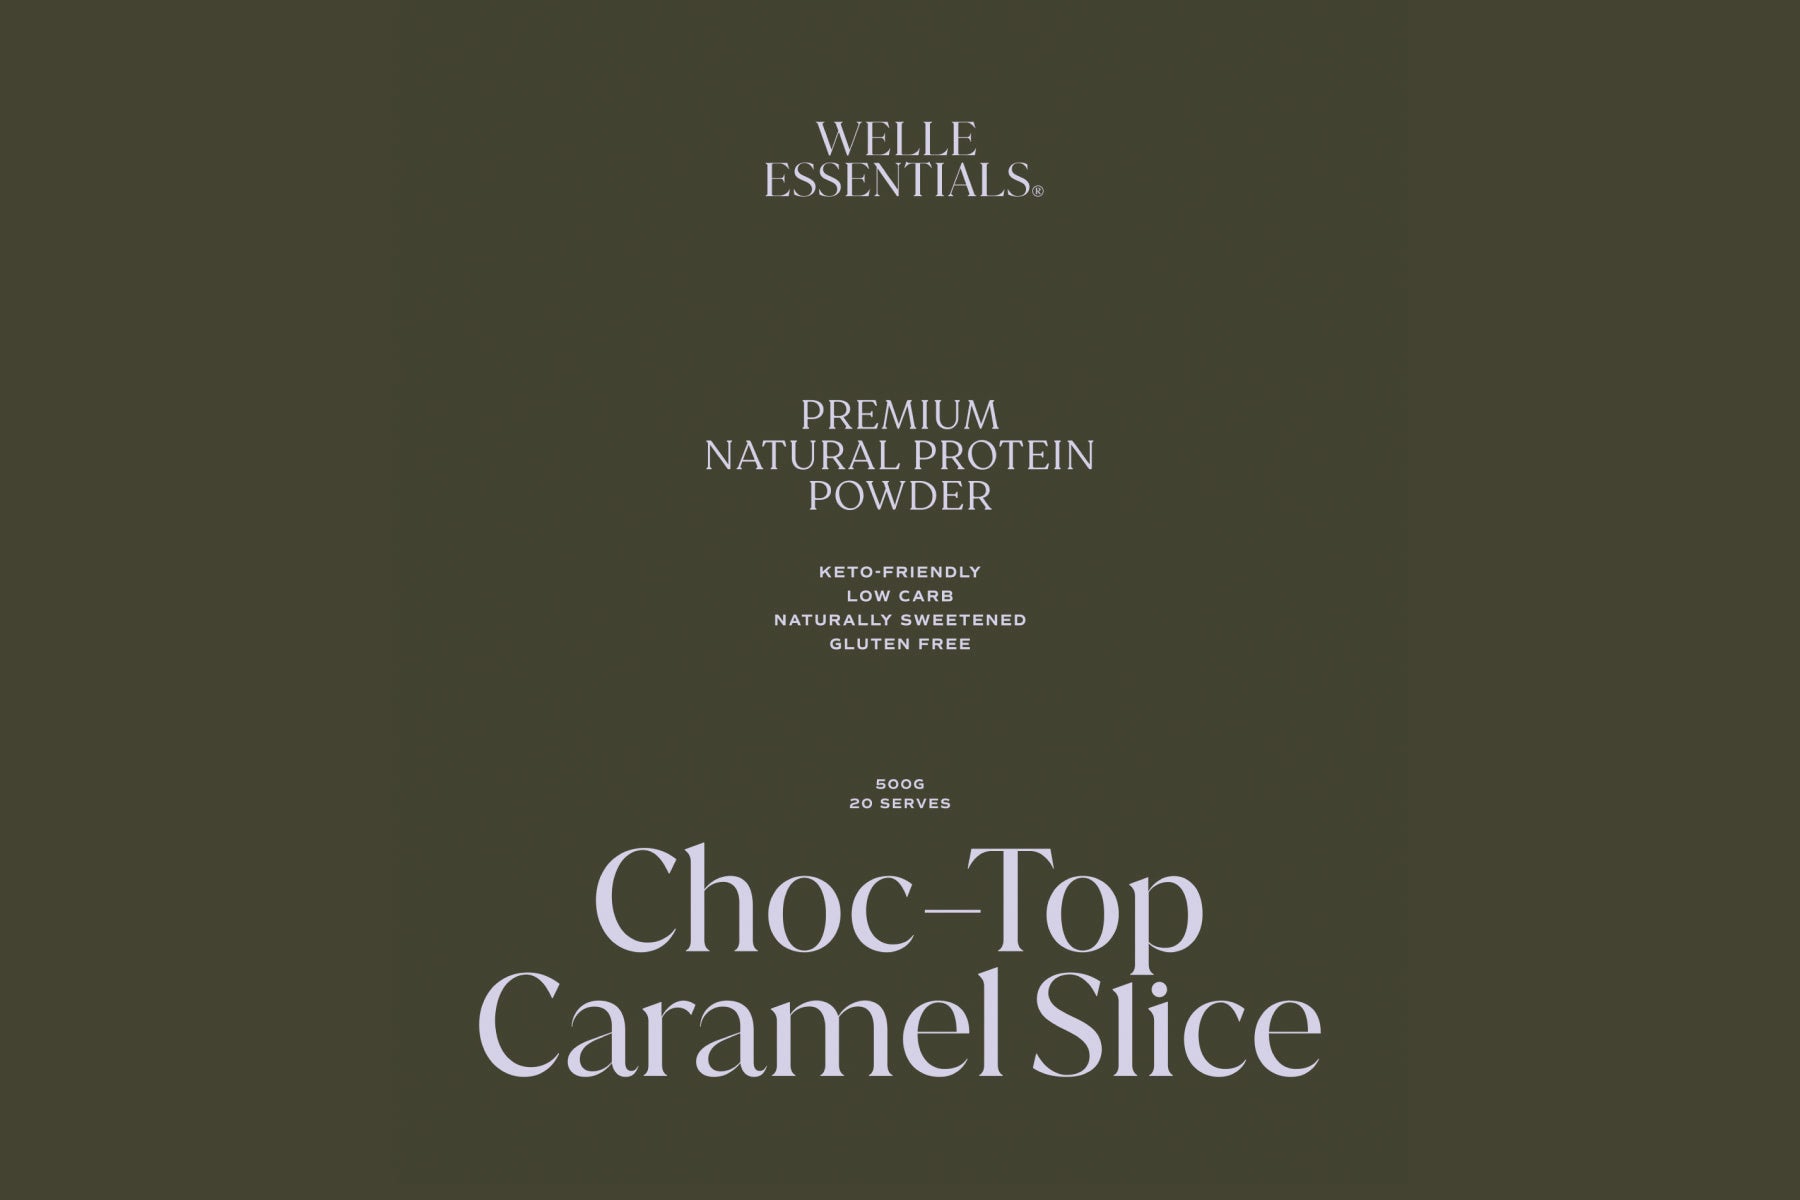 Premium Natural Protein - Choc-Top Caramel Slice